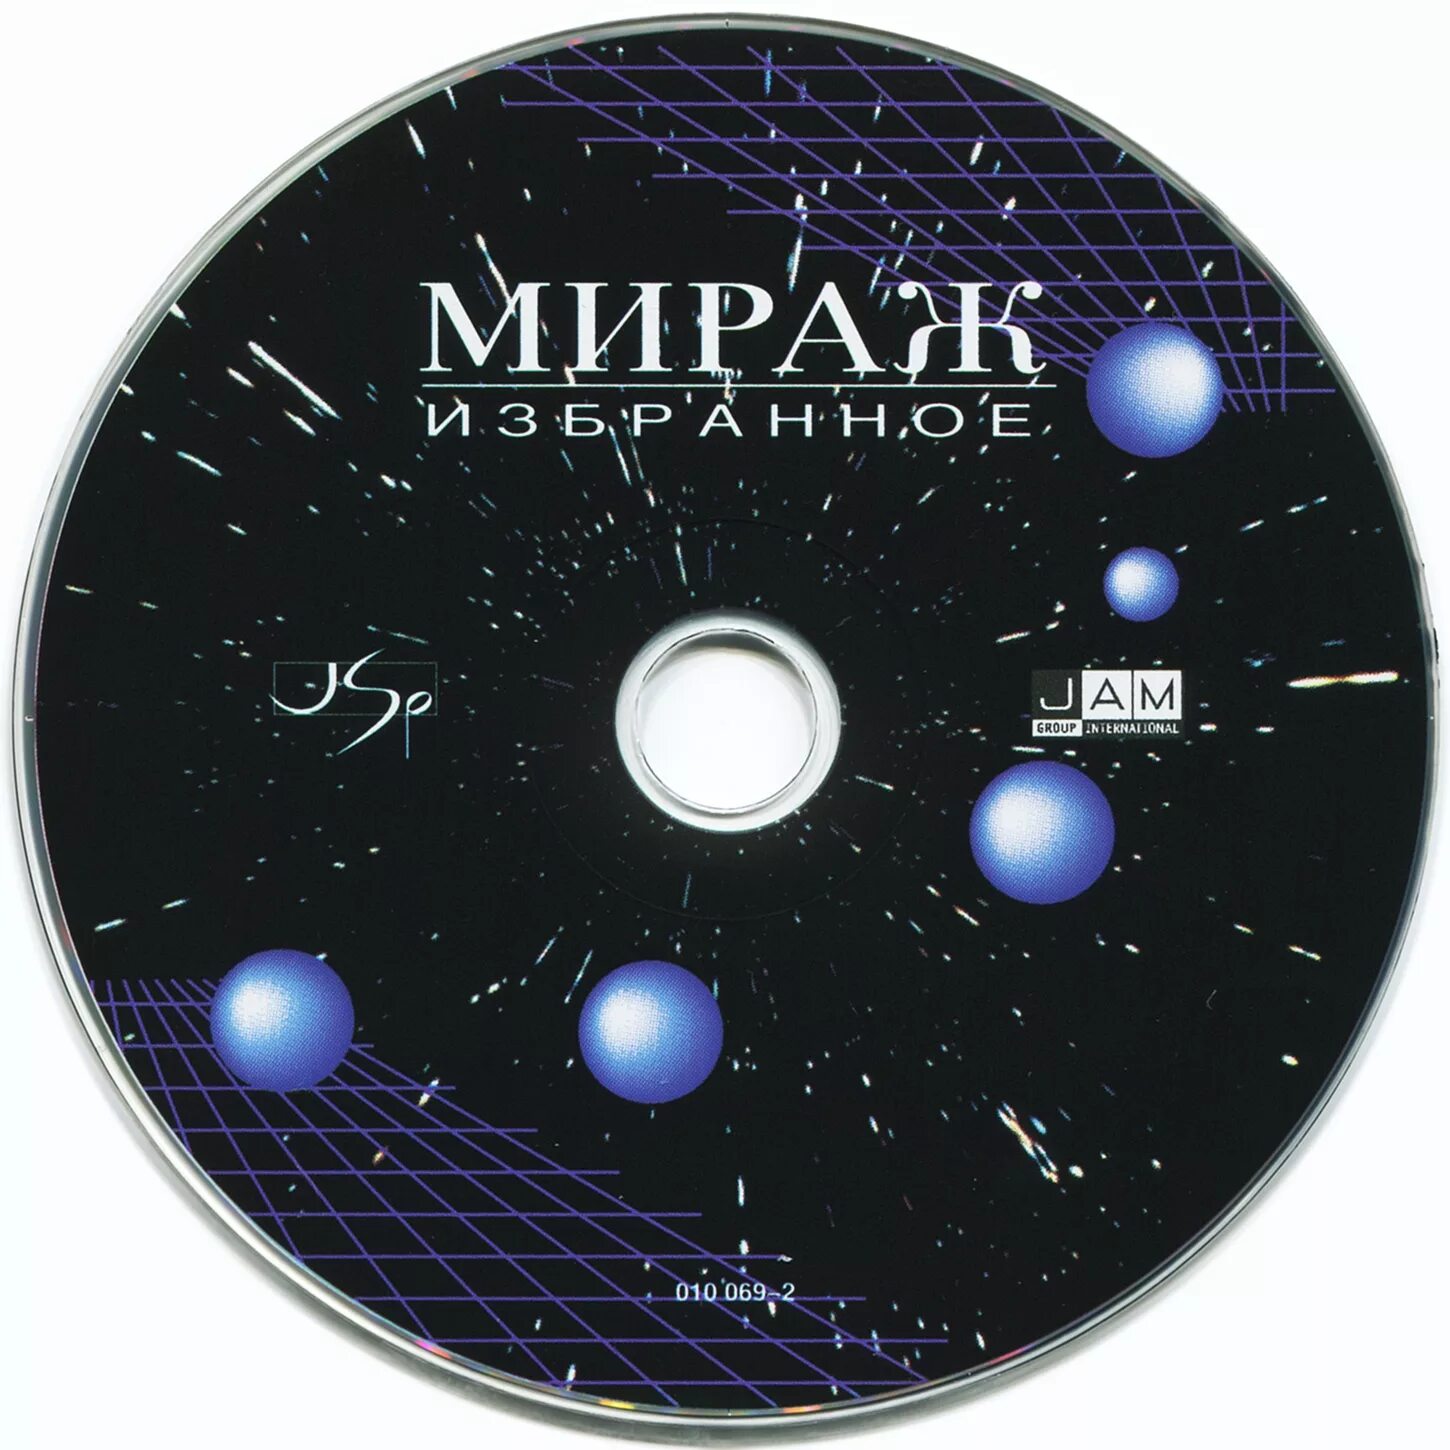 Музыка песни группы мираж. Группа Мираж обложка. CD Мираж избранное 1994. Группа Мираж обложки альбомов. Мираж компакт диски мп3.